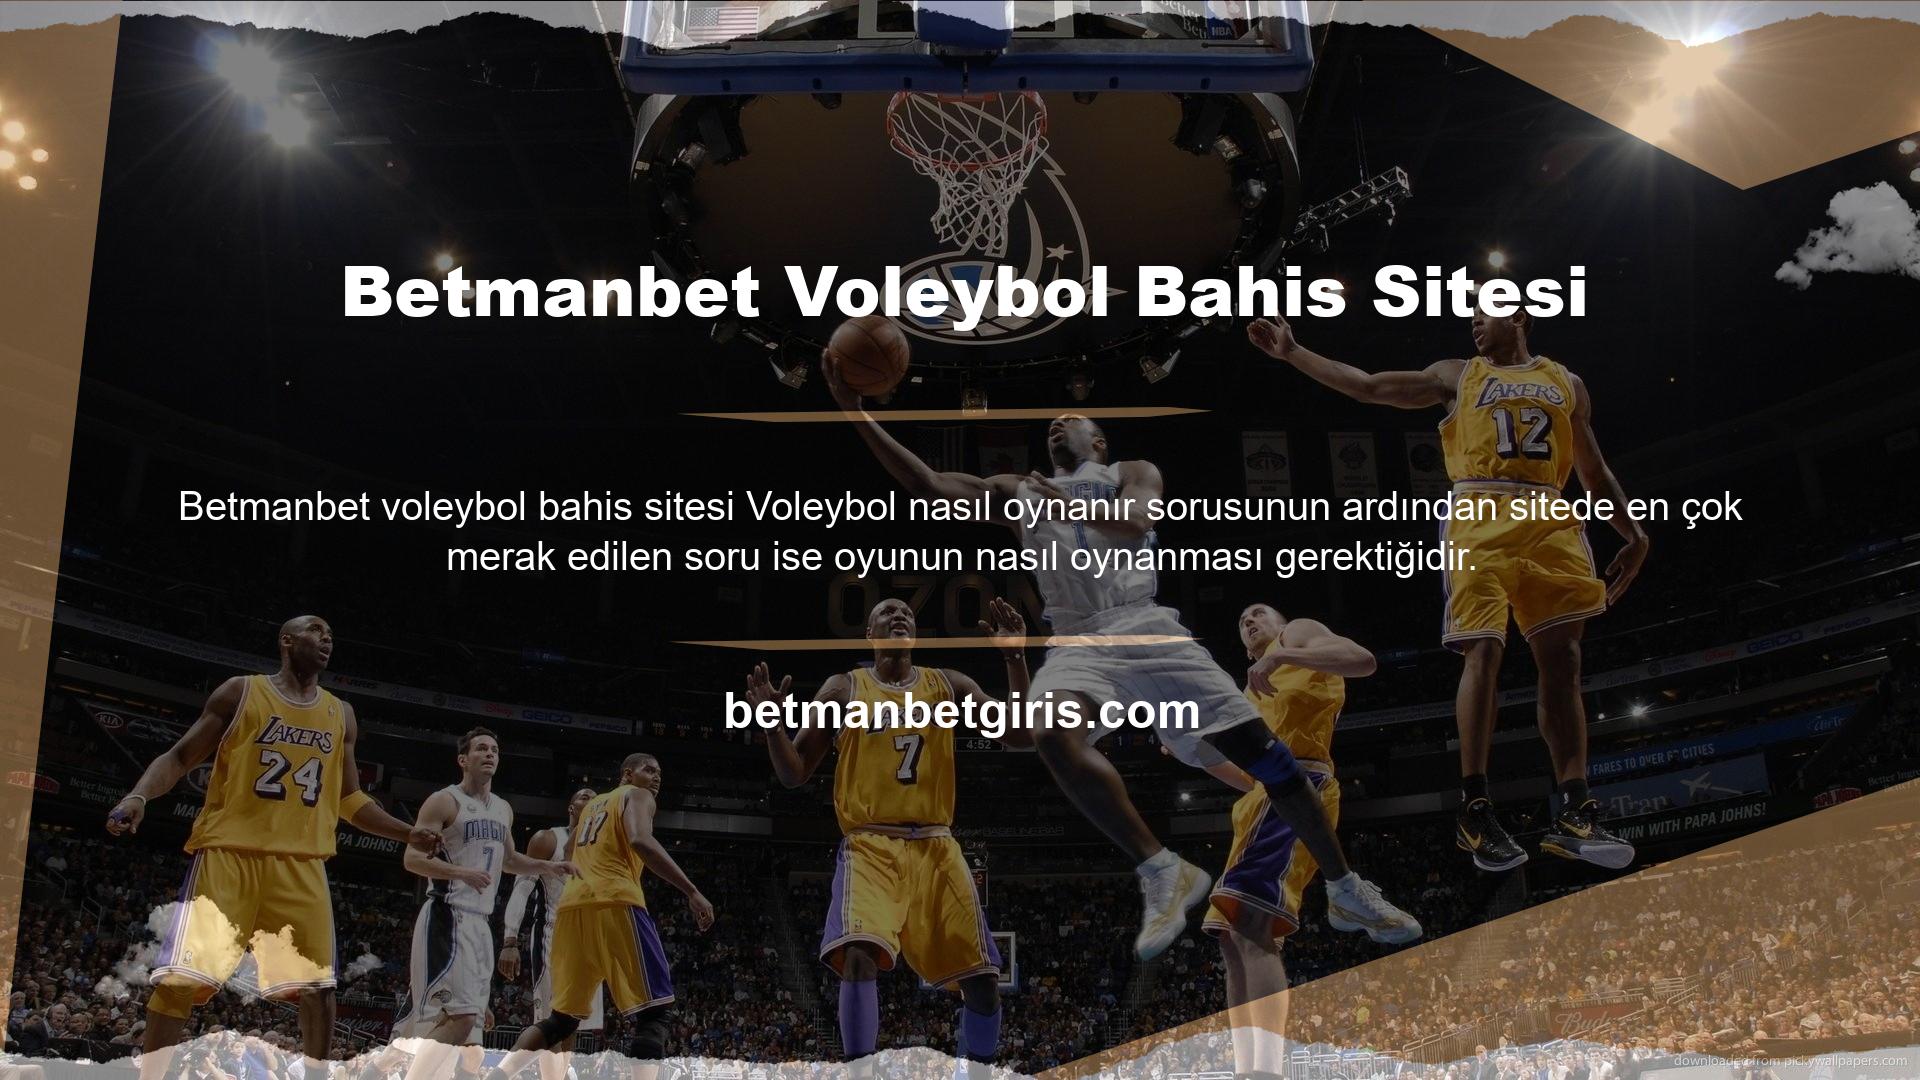 Bunun için Betmanbet, Türk ve yabancı arkadaşlık siteleri sunmaktadır